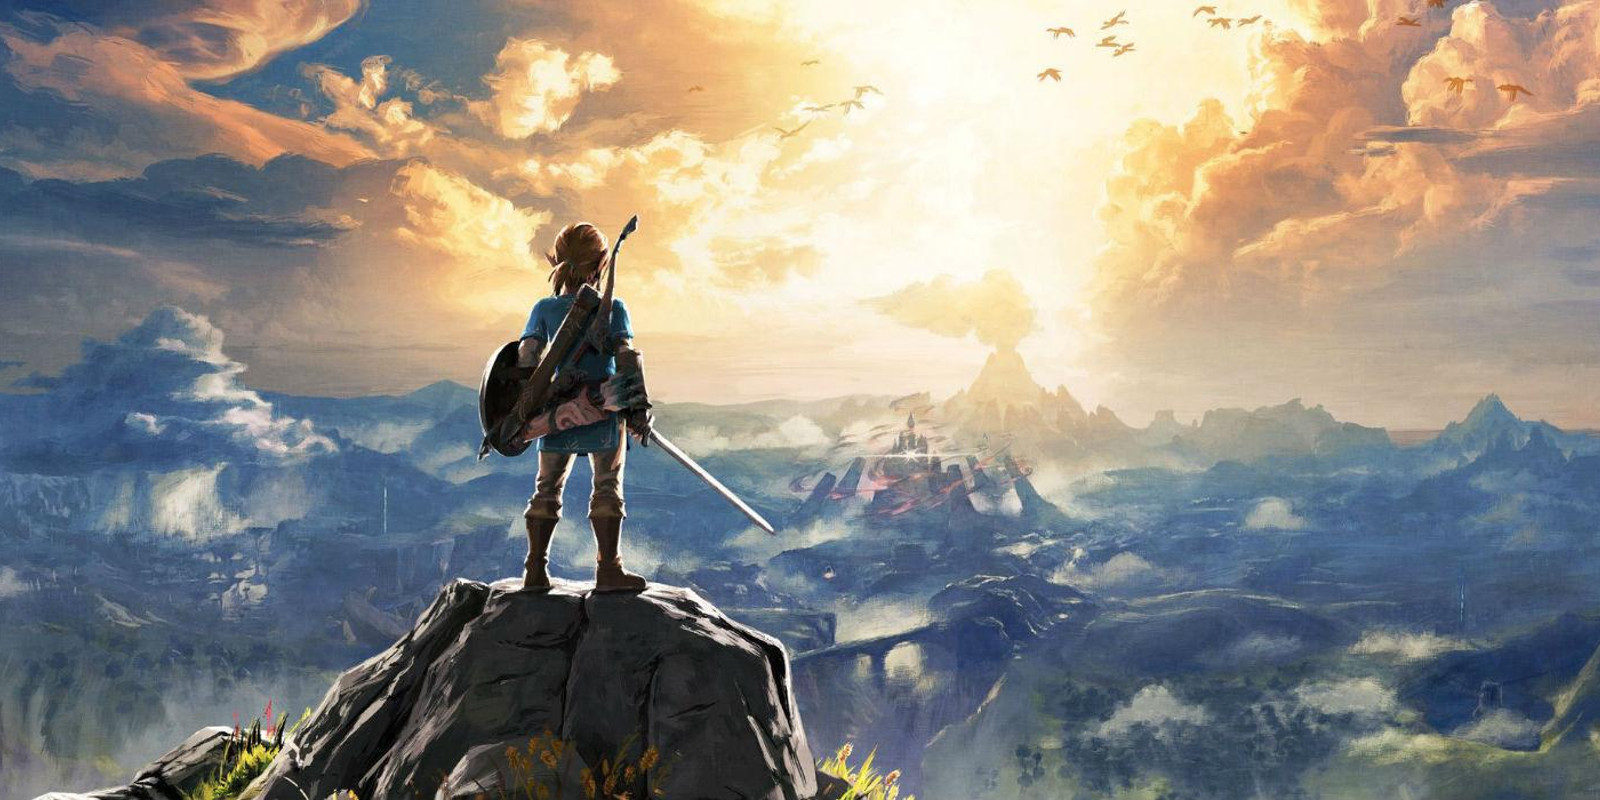 Por qué 'The Legend of Zelda: Breath of the Wild' va a ser único en la saga